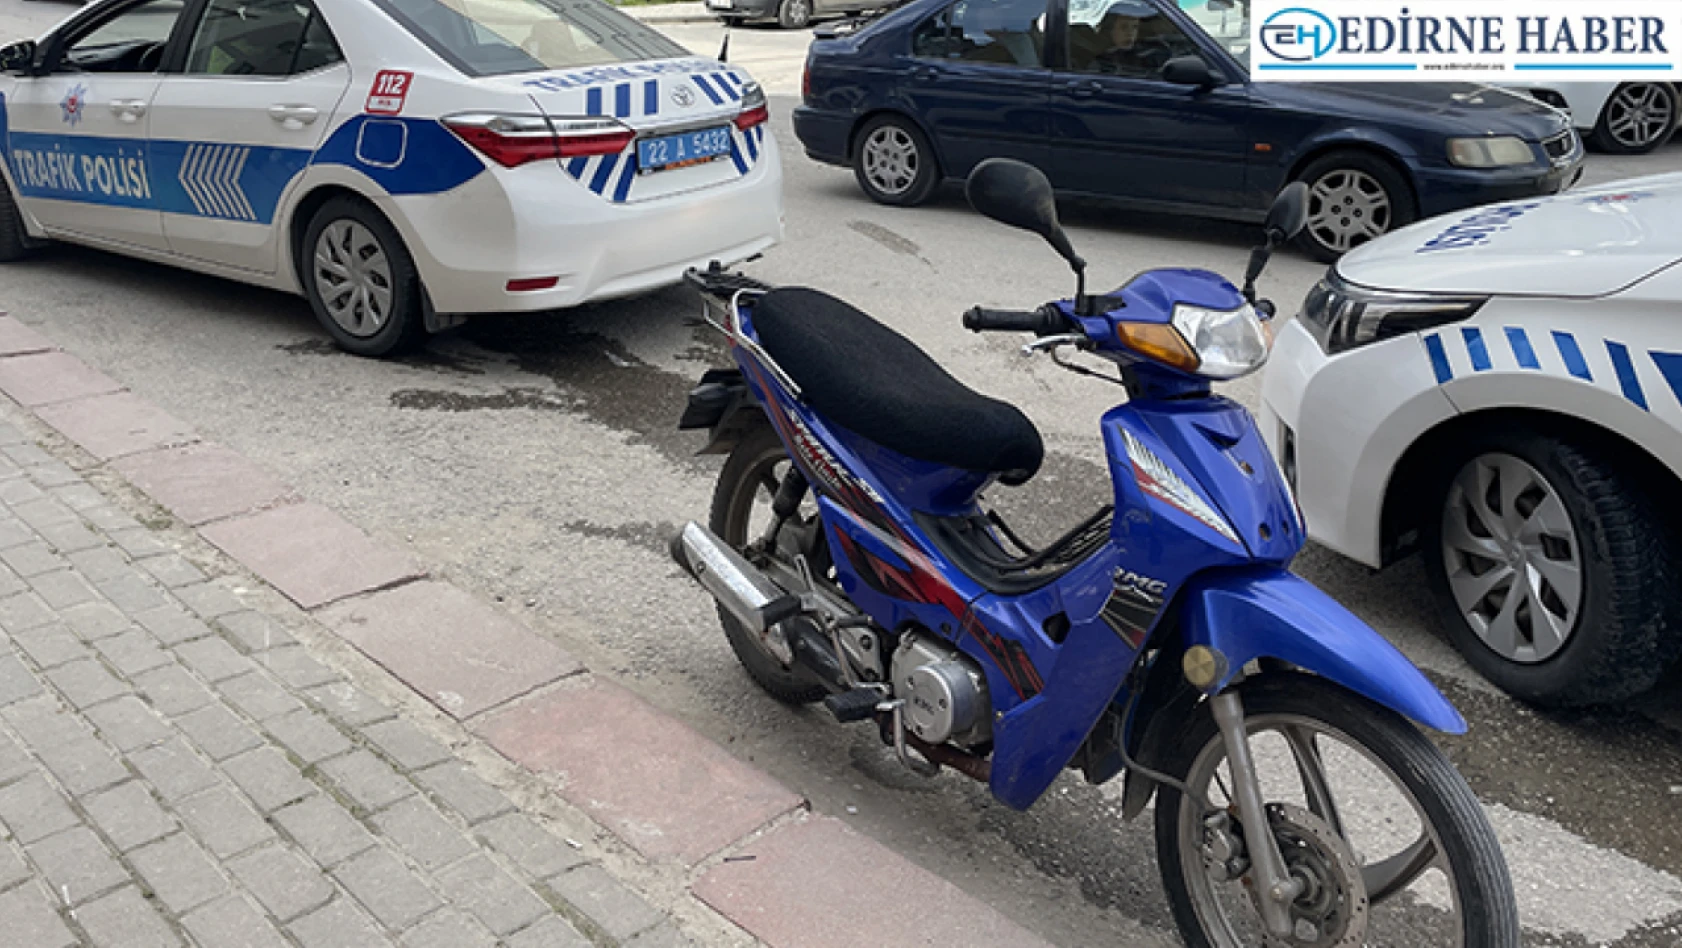 Edirne'de otomobilin çarptığı motosiklet sürücüsü yaralandı